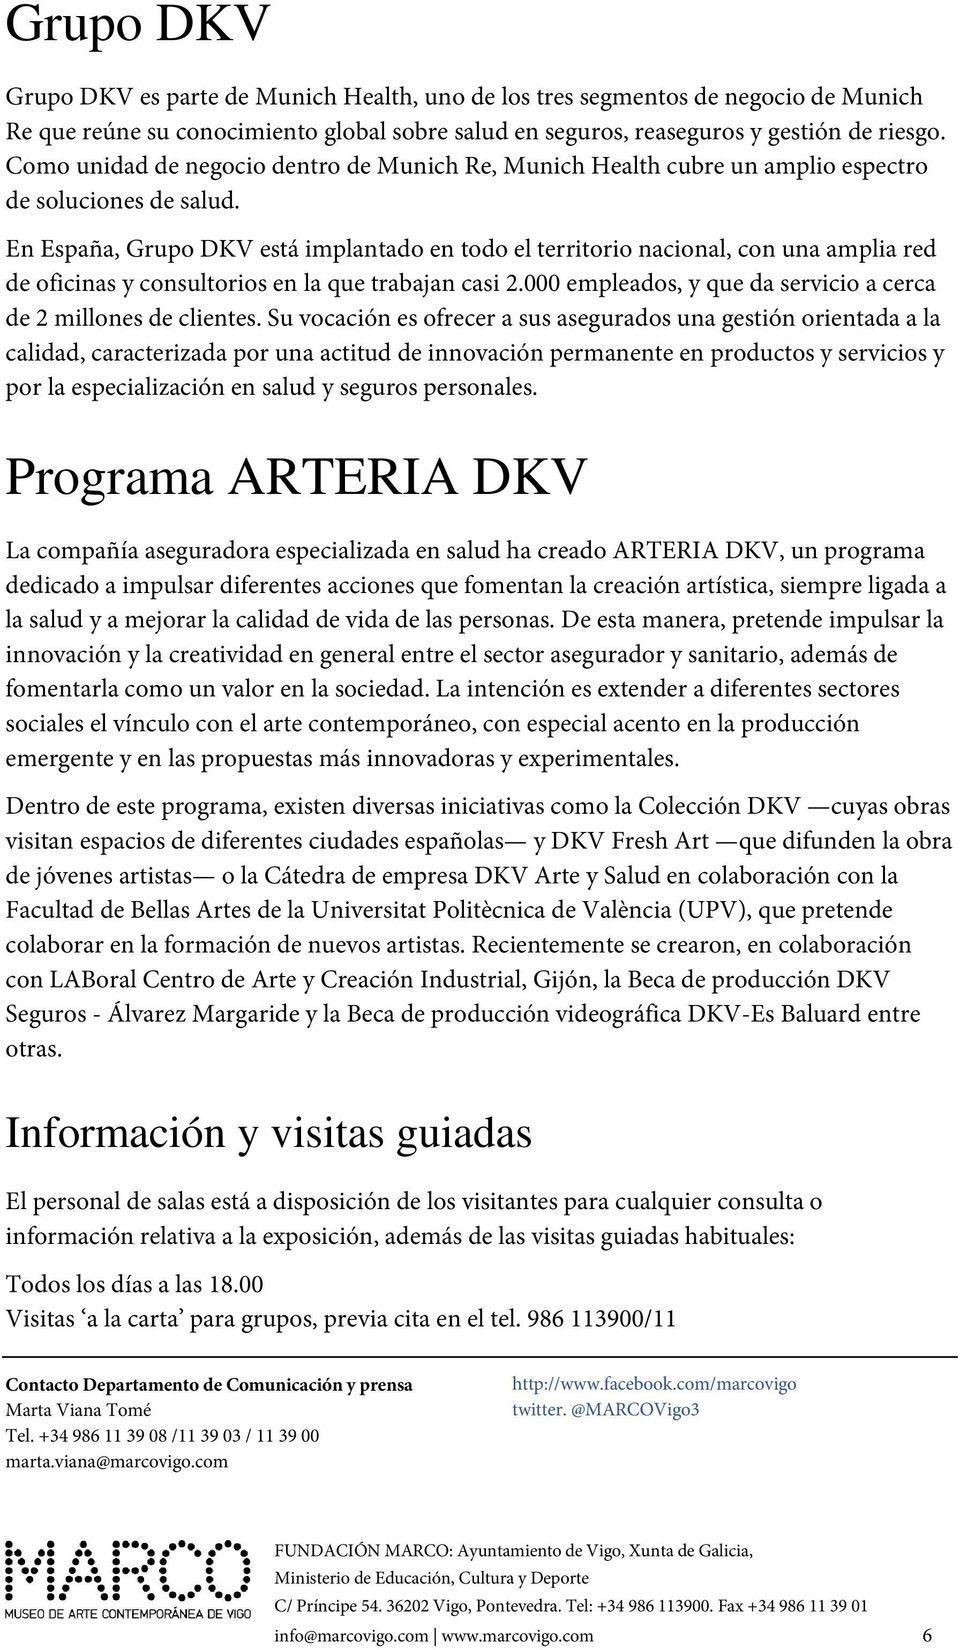 En España, Grupo DKV está implantado en todo el territorio nacional, con una amplia red de oficinas y consultorios en la que trabajan casi 2.